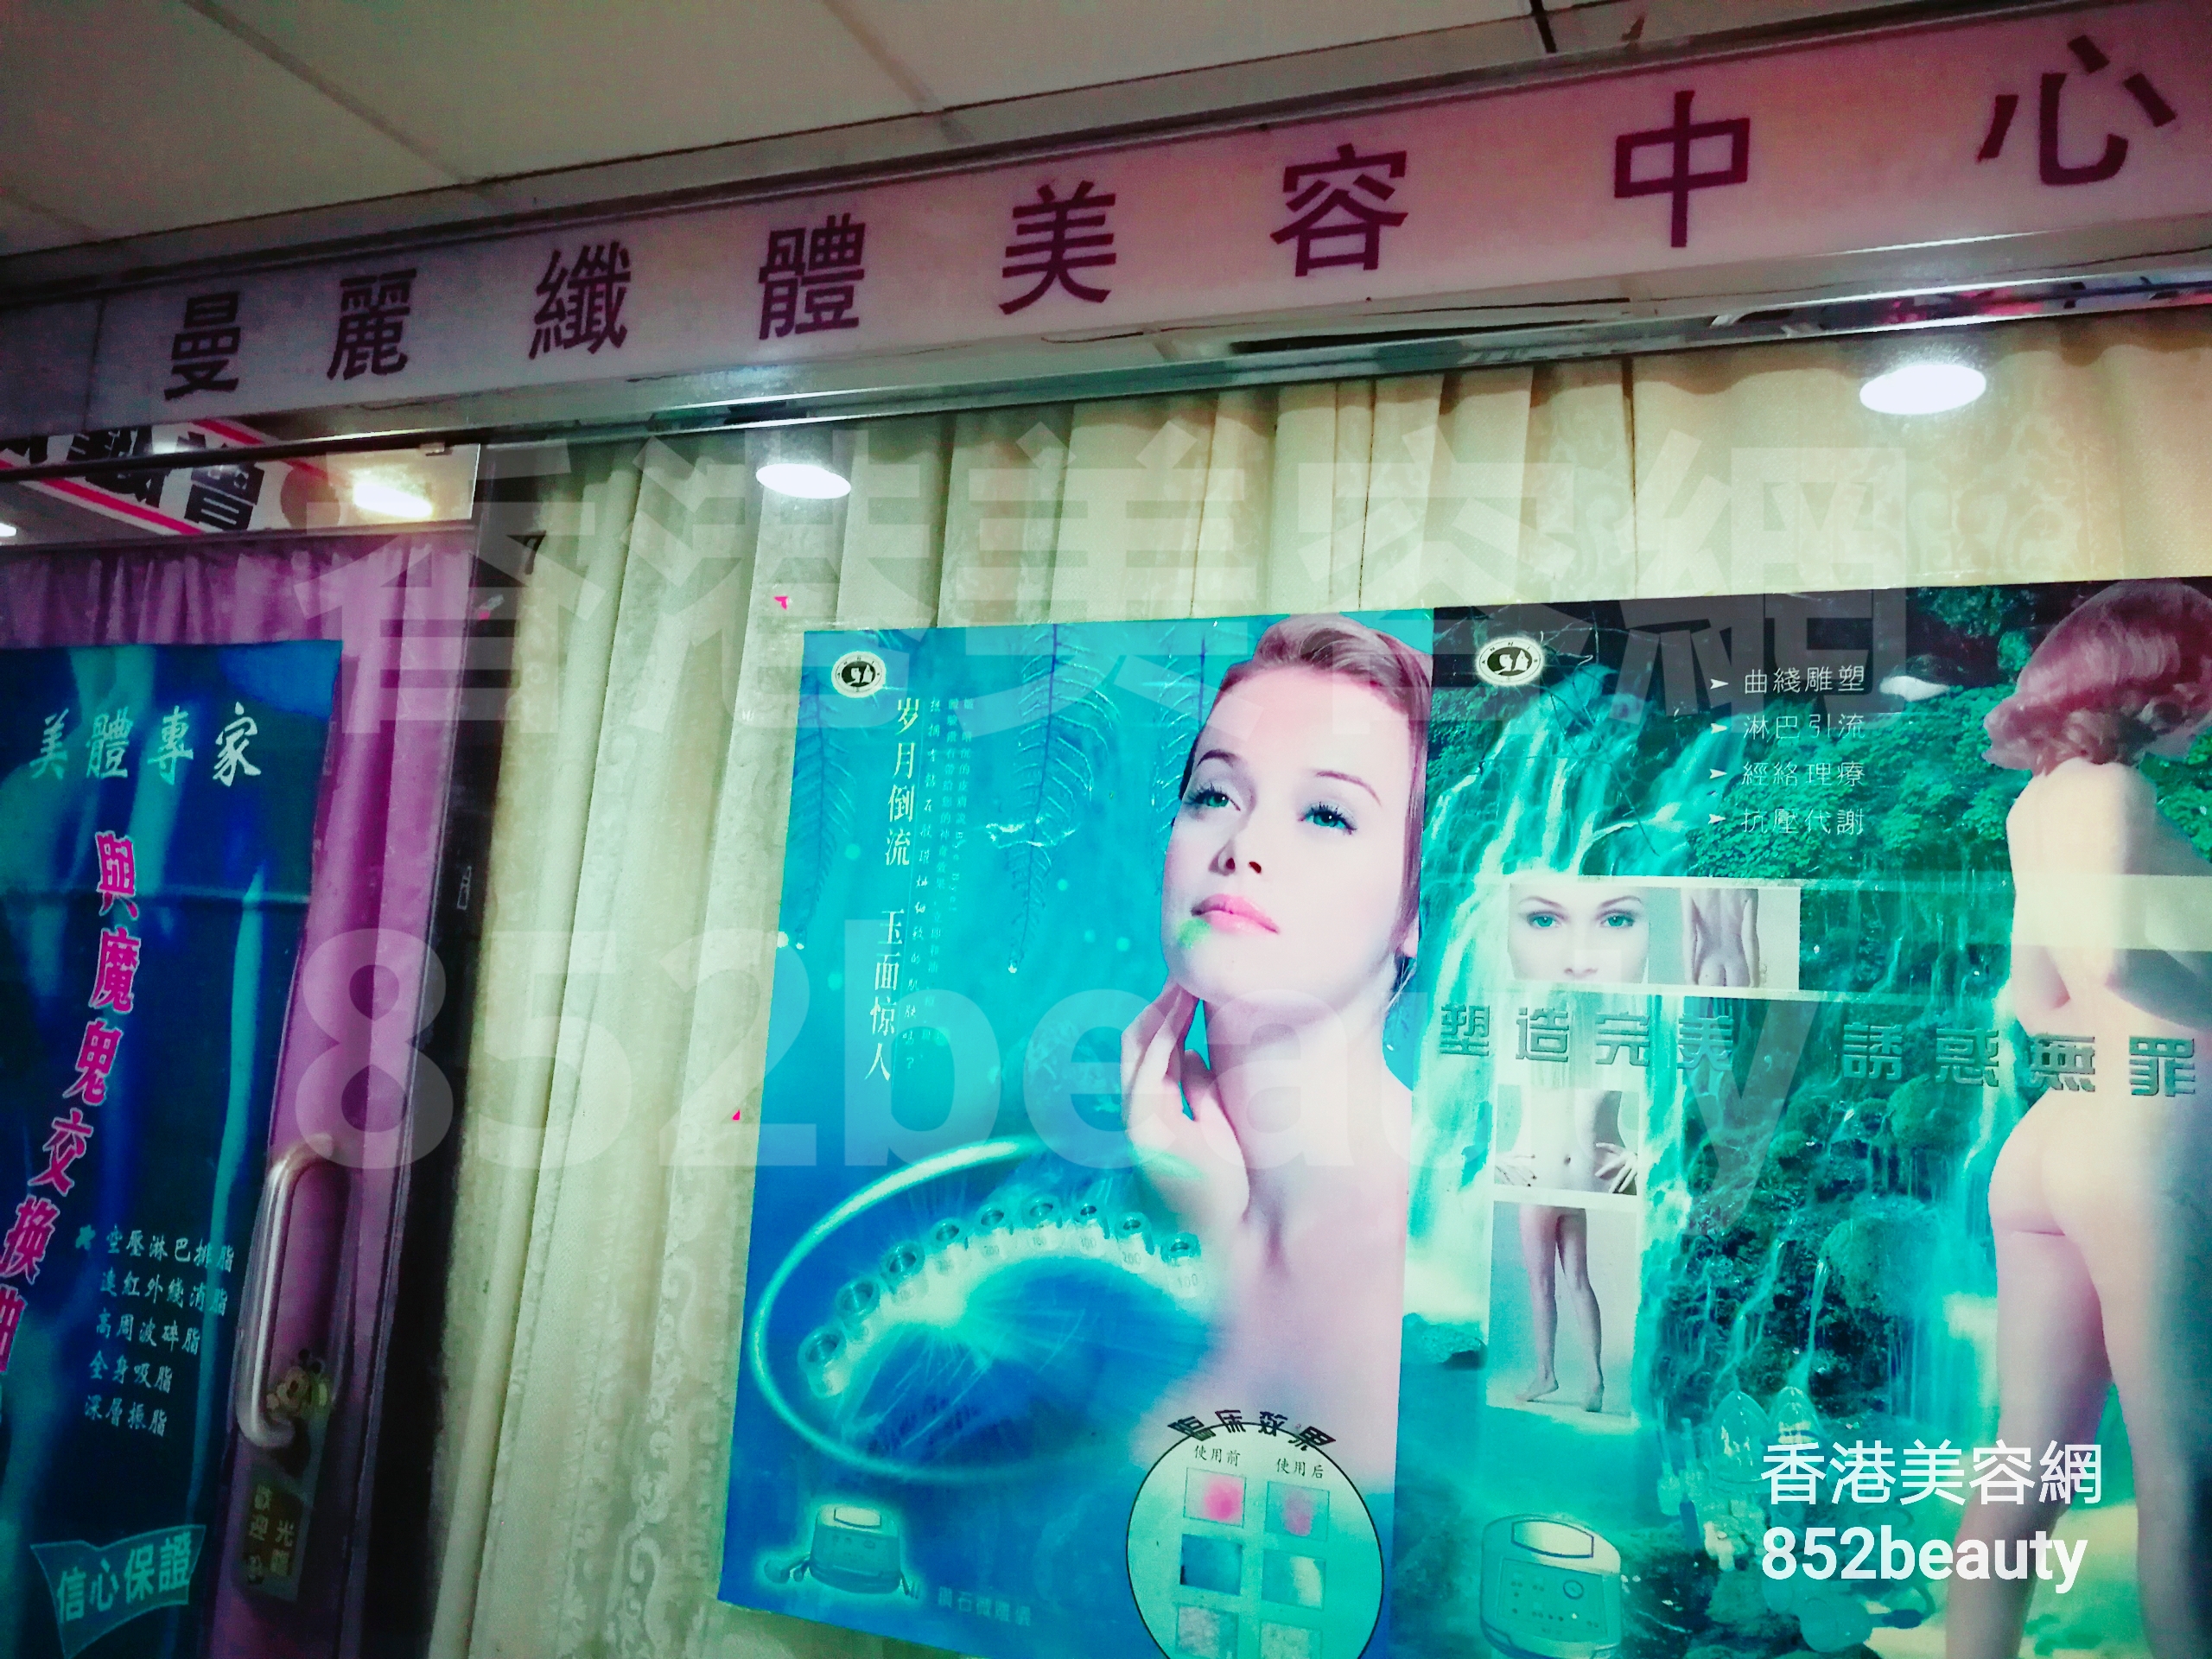 香港美容網 Hong Kong Beauty Salon 美容院 / 美容師: 曼麗織體美容中心